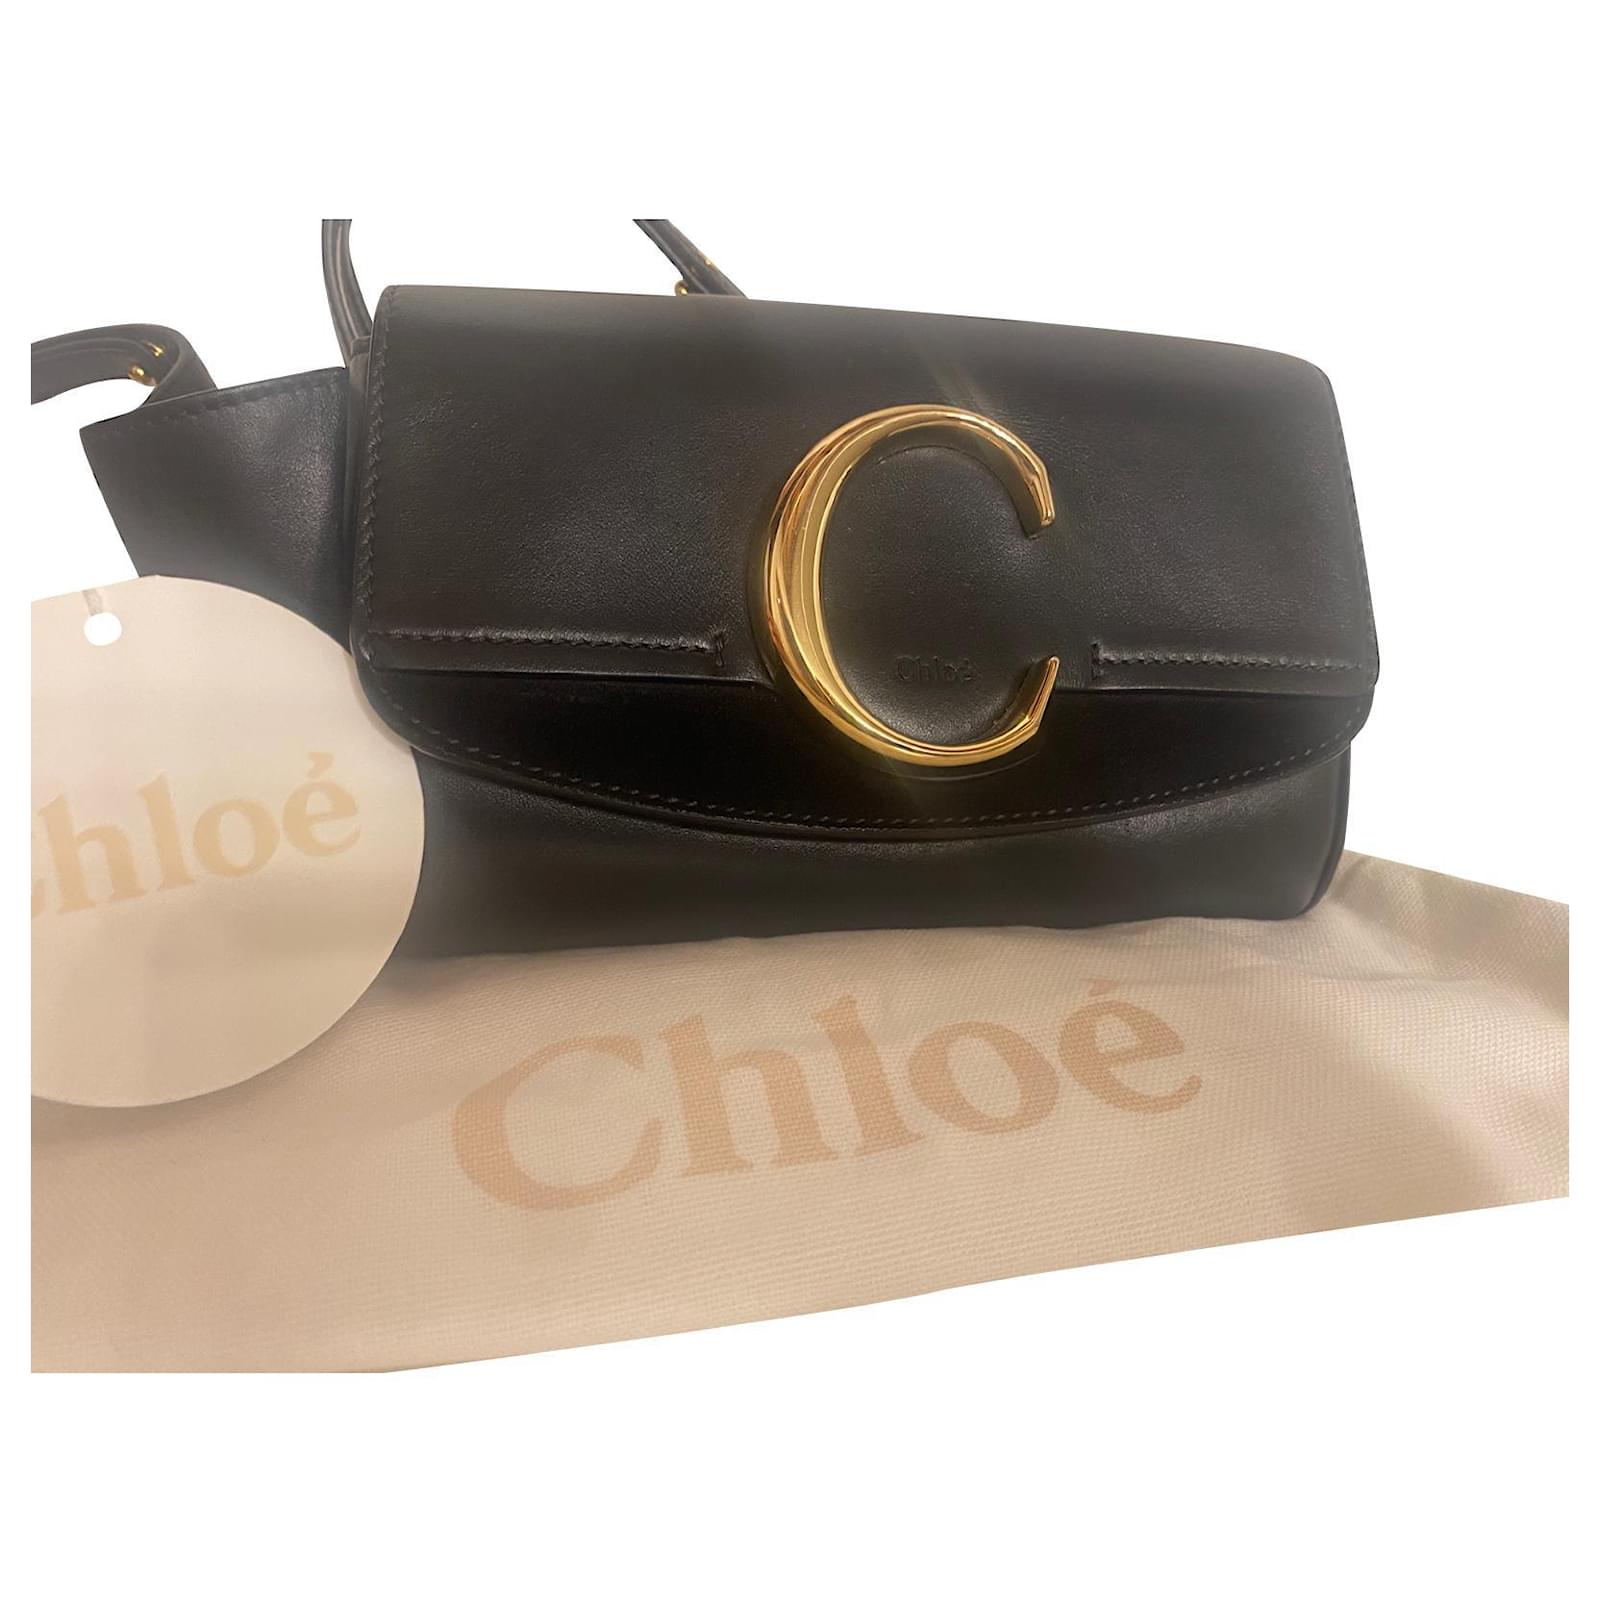 Chloe C bag  Chloe c bag, Chloe c, Bags